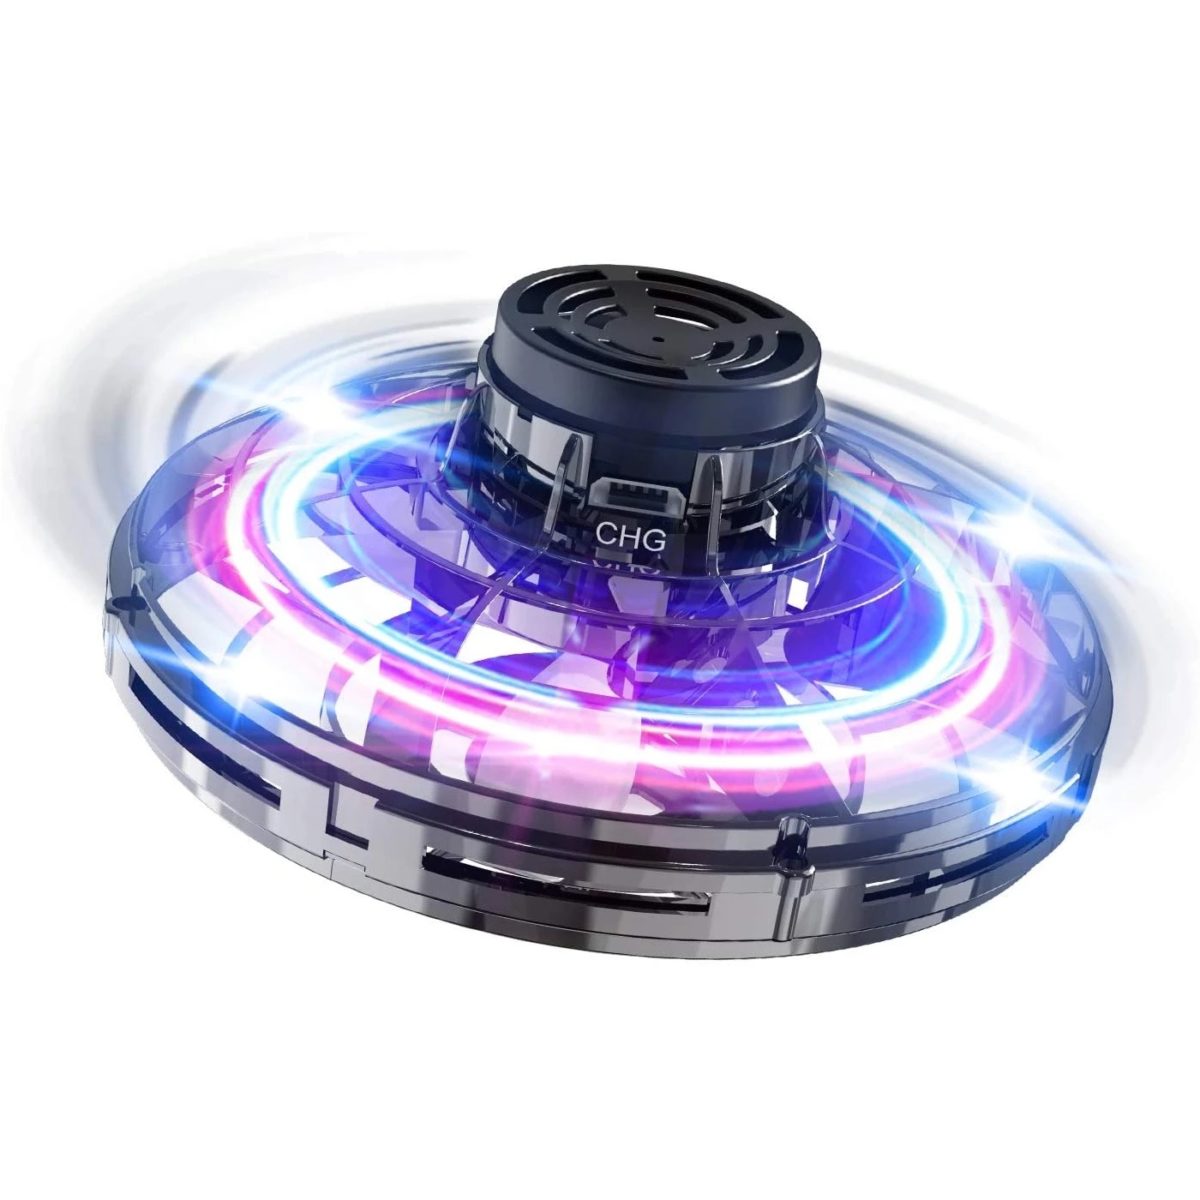 Házející PTW Flying spinner s LED osvětlením Barva: Modrá